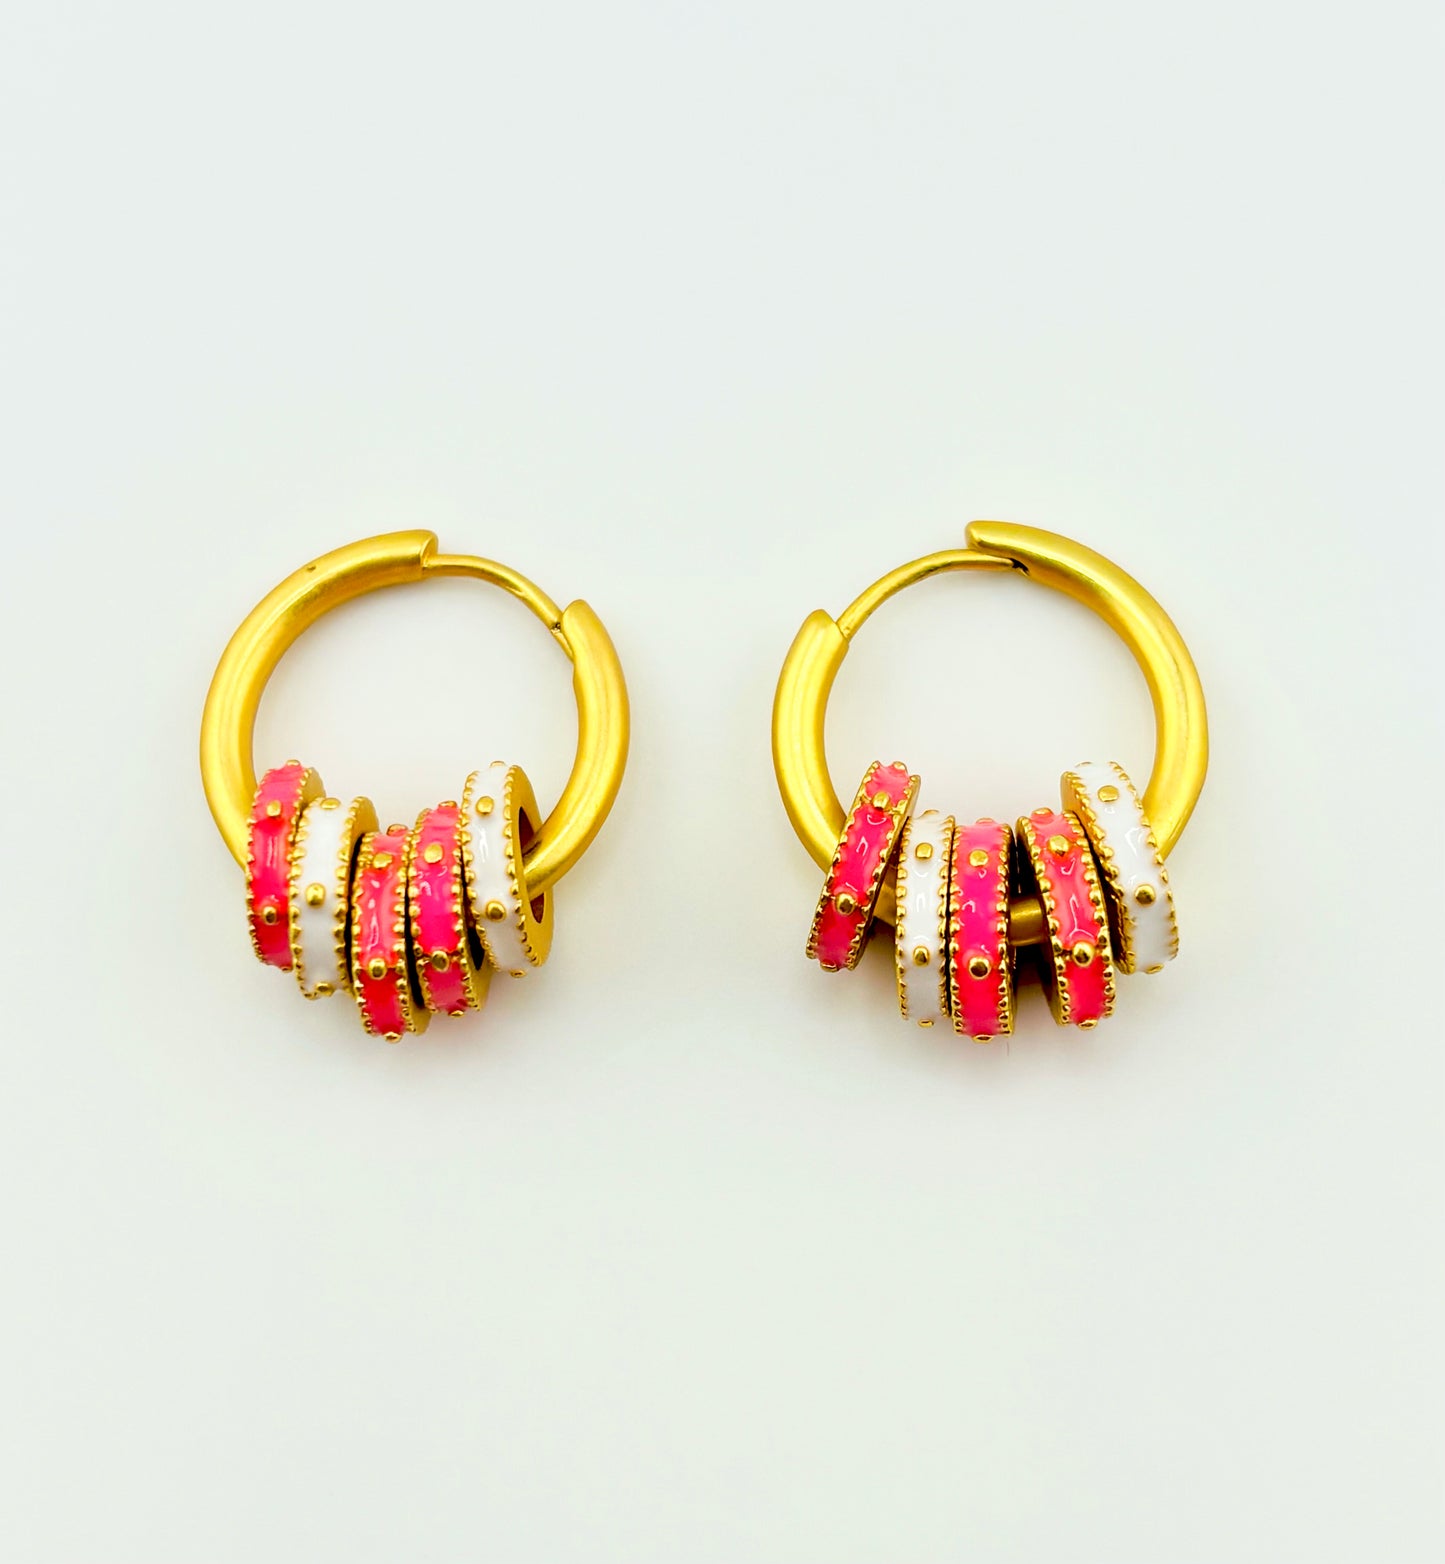 Lisa 18k gold filled hoops in pink texture earrings